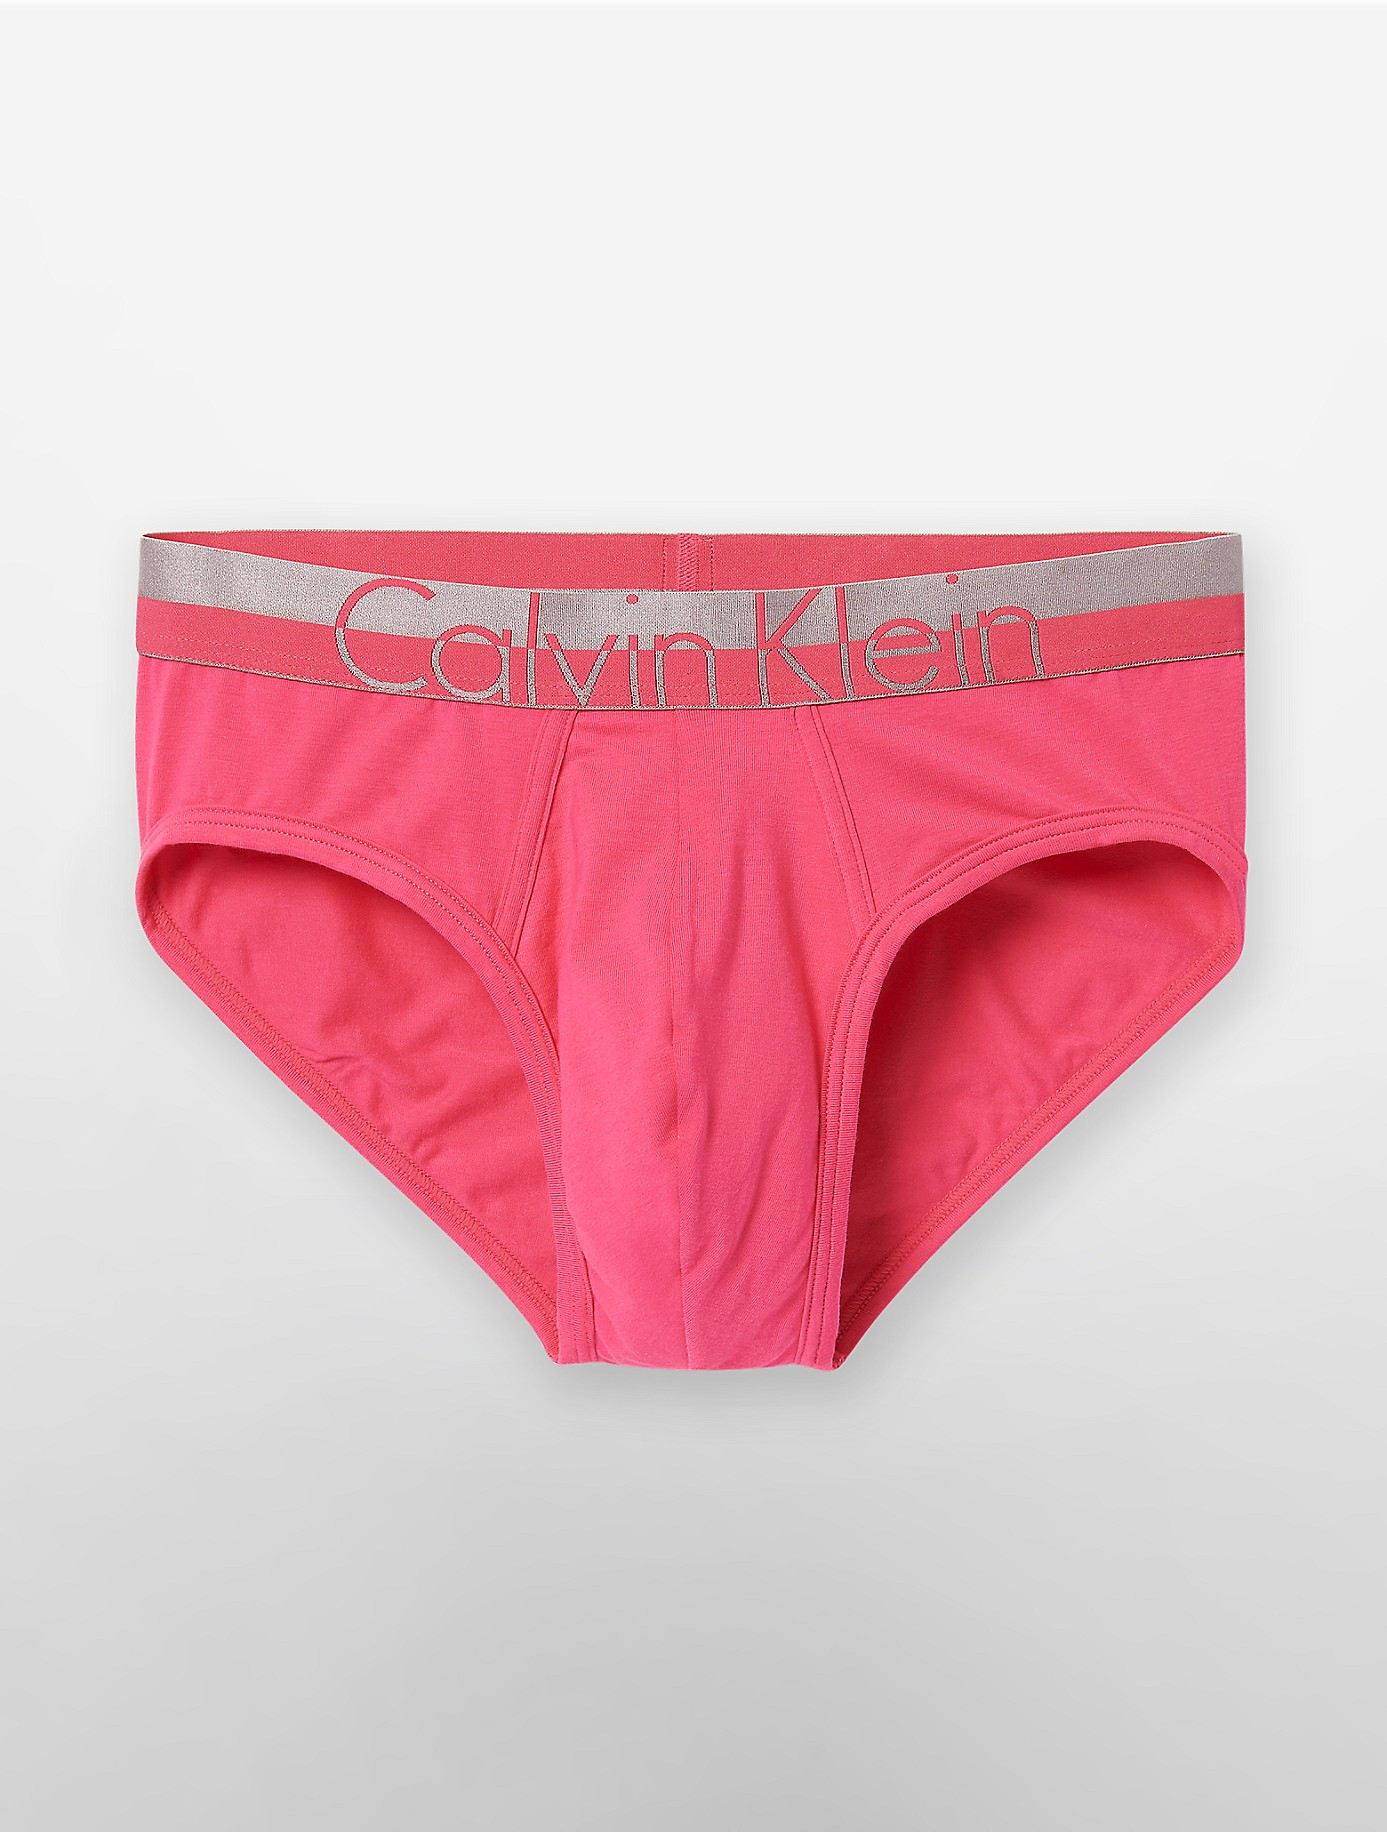 Calvin klein Underwear Magnetic Force Cotton Hip Brief in Pink for Men ...